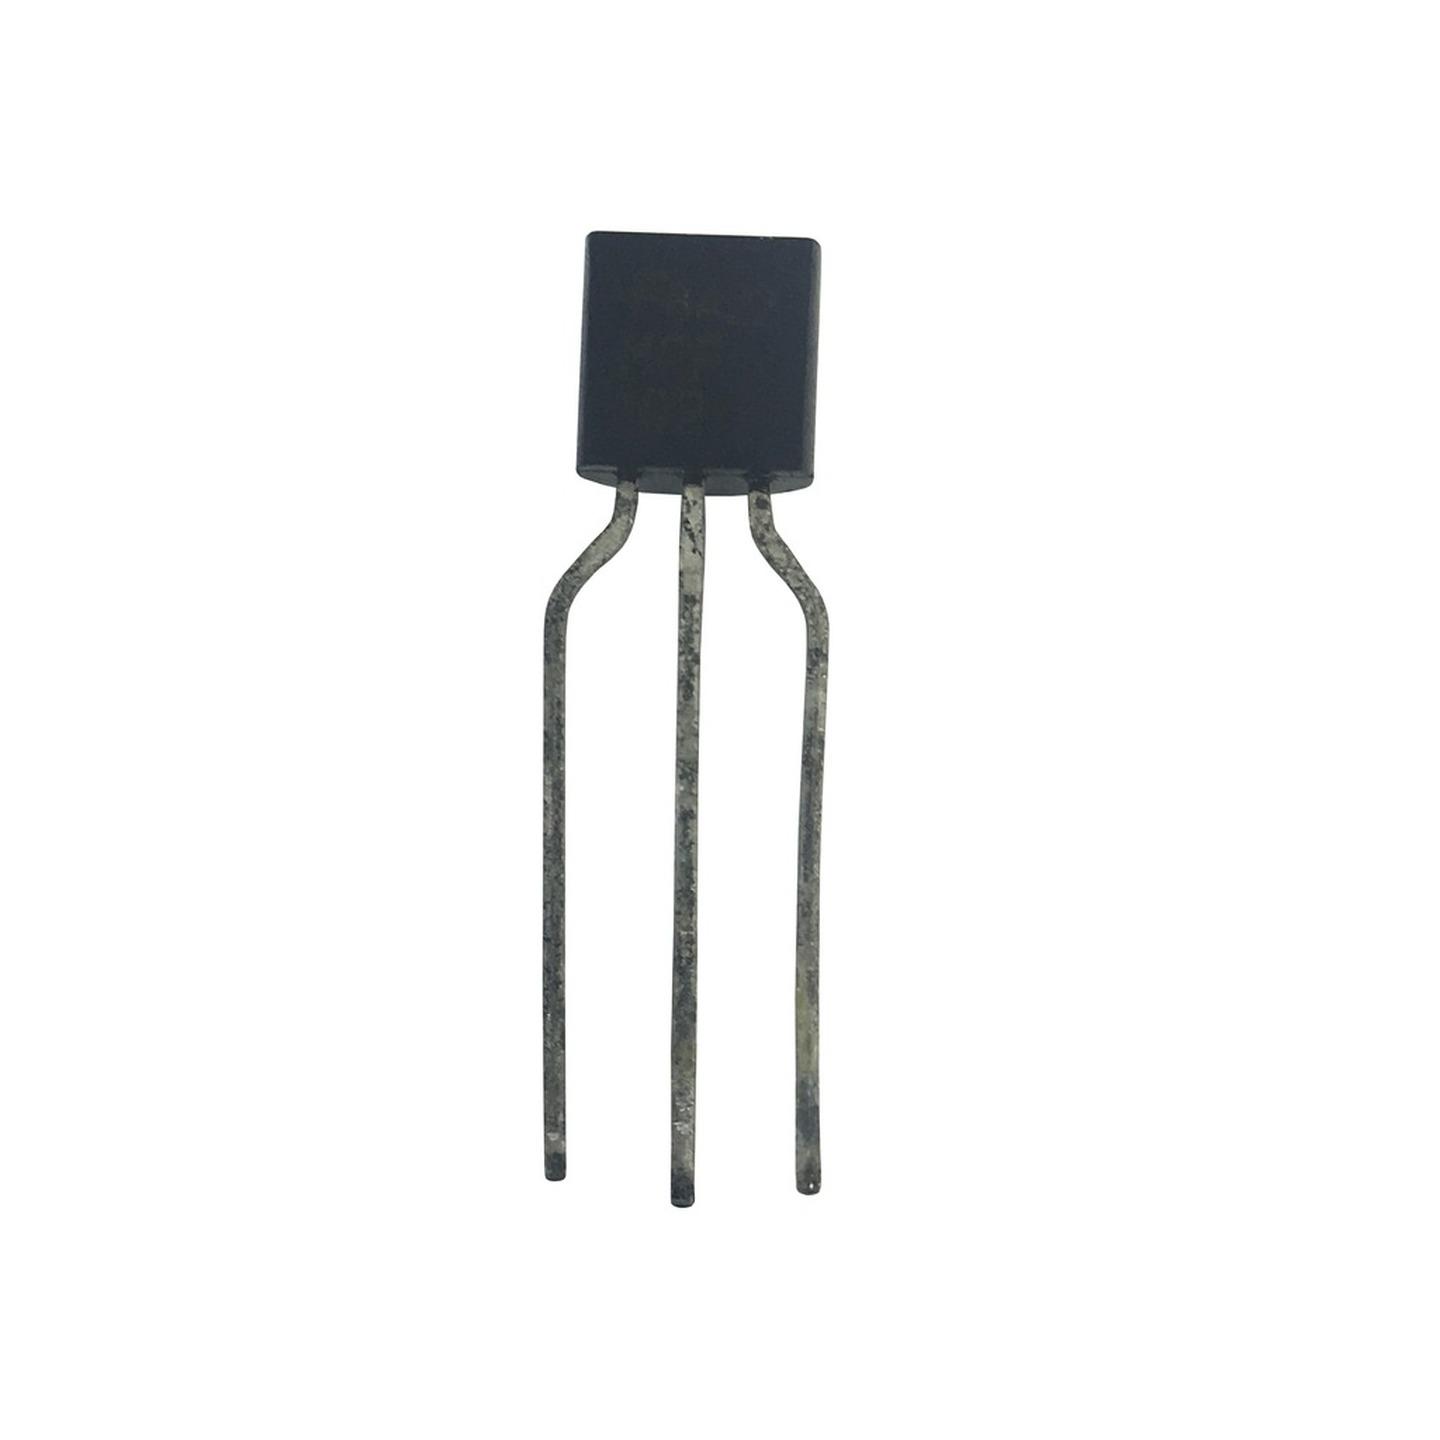 MPSA13 NPN Transistor